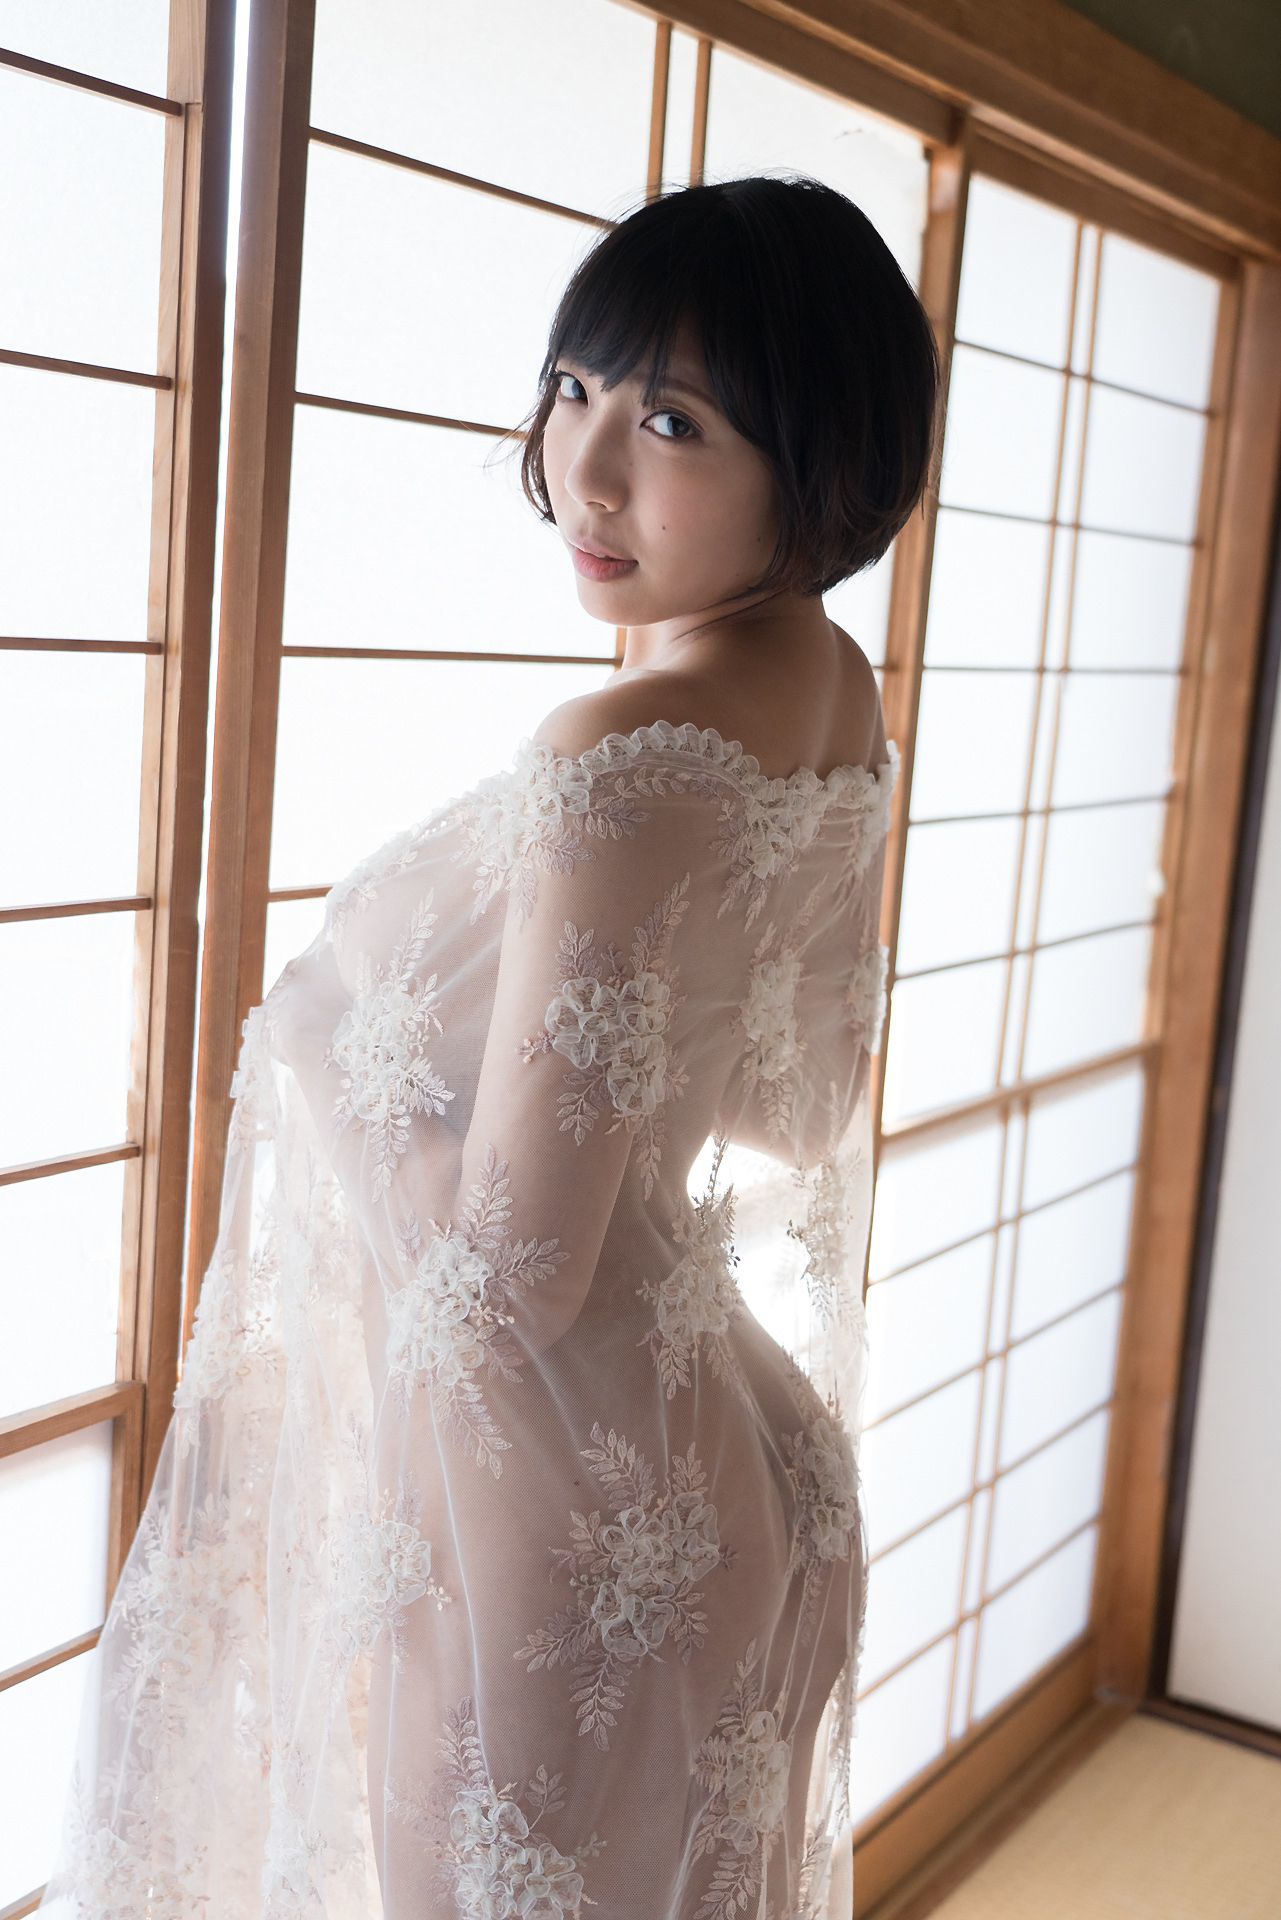 [Minisuka.tv] 麻倉まりな Marina Asakura - 蕾丝人体诱惑巨乳-第7张美女图片